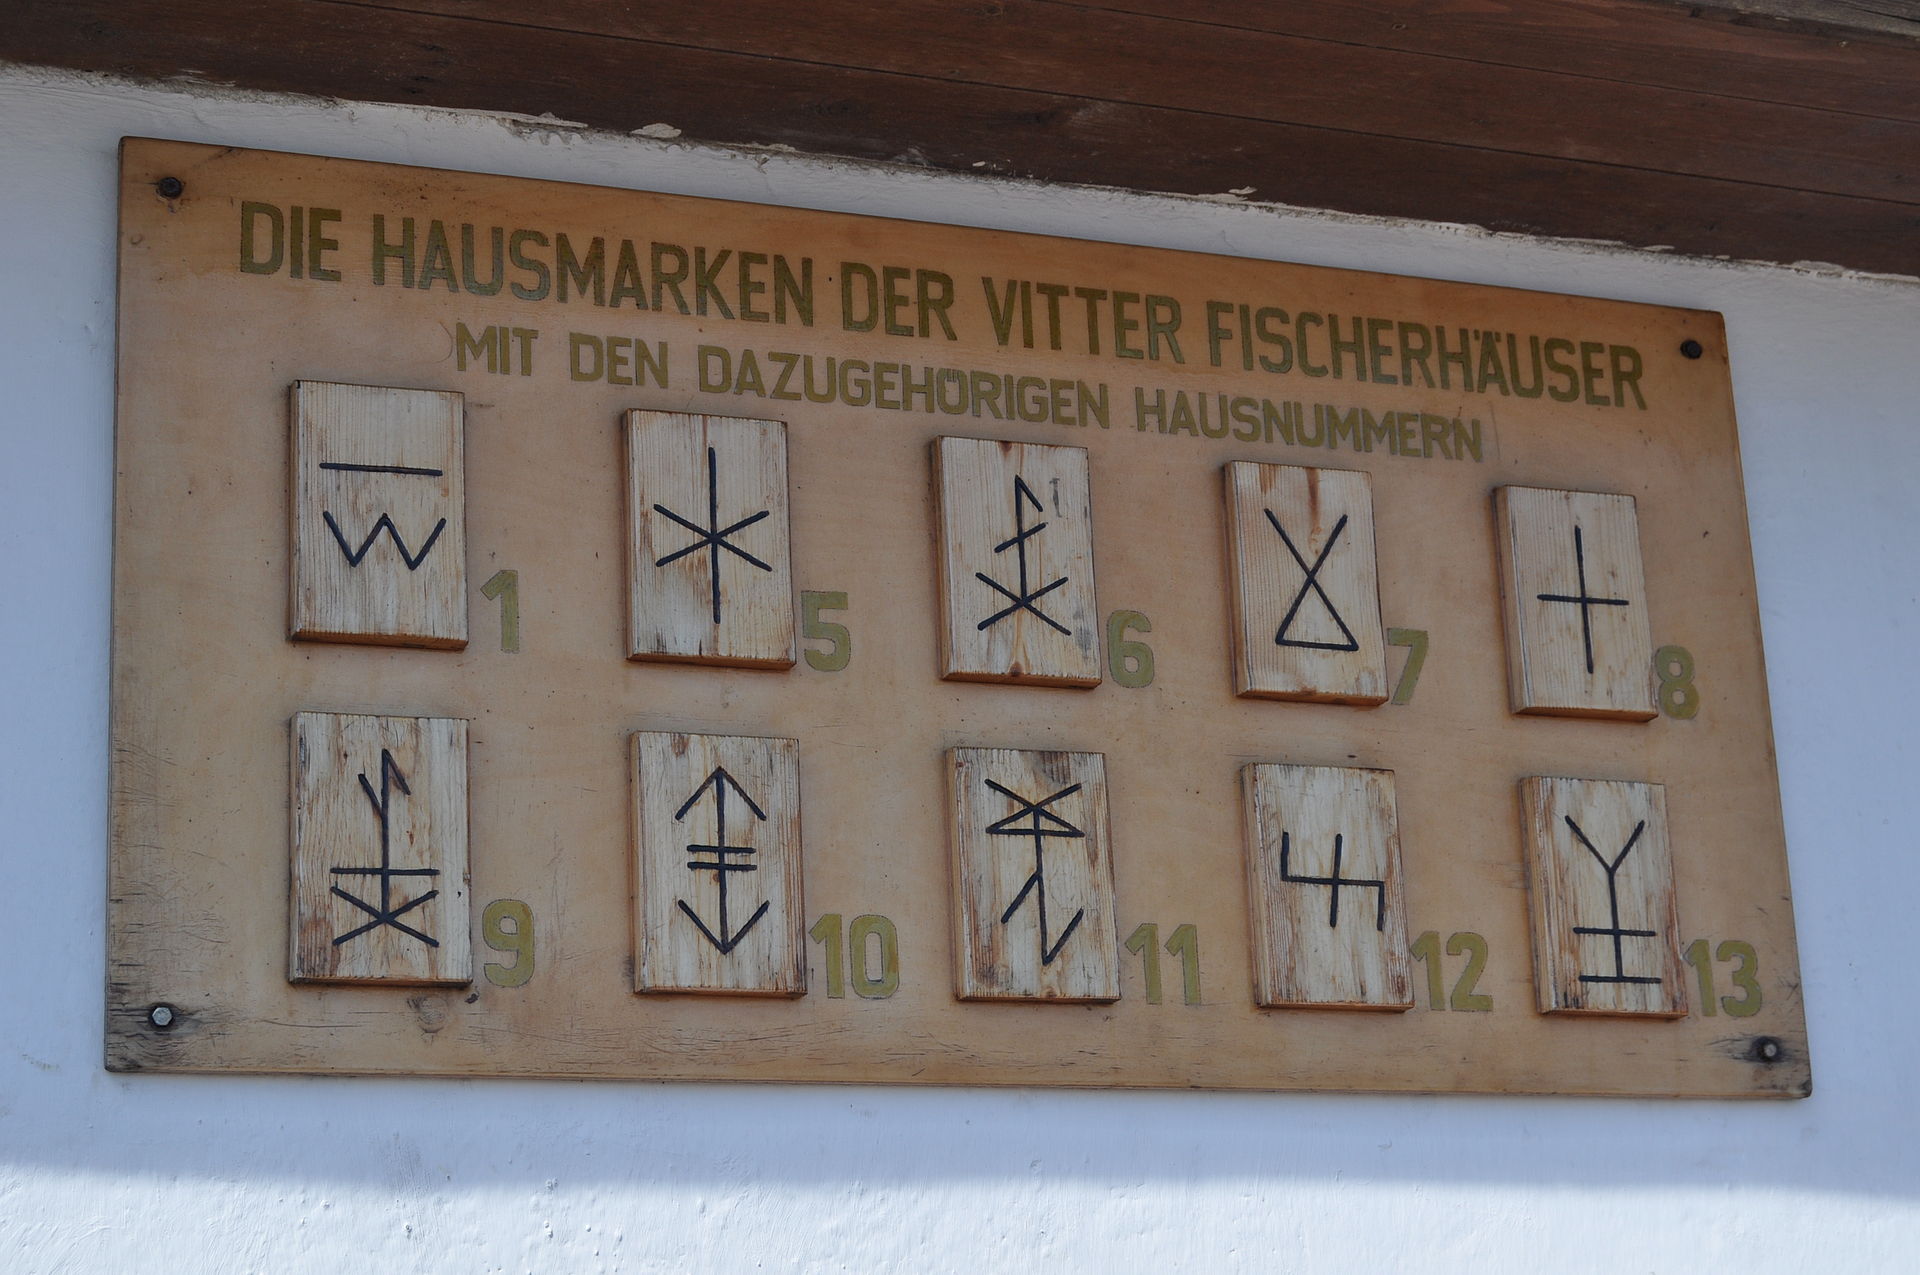 Die Hausmarken der Fischerhäuser in Vitt auf Rügen (Bild Chron-Paul - Eigenes Werk)